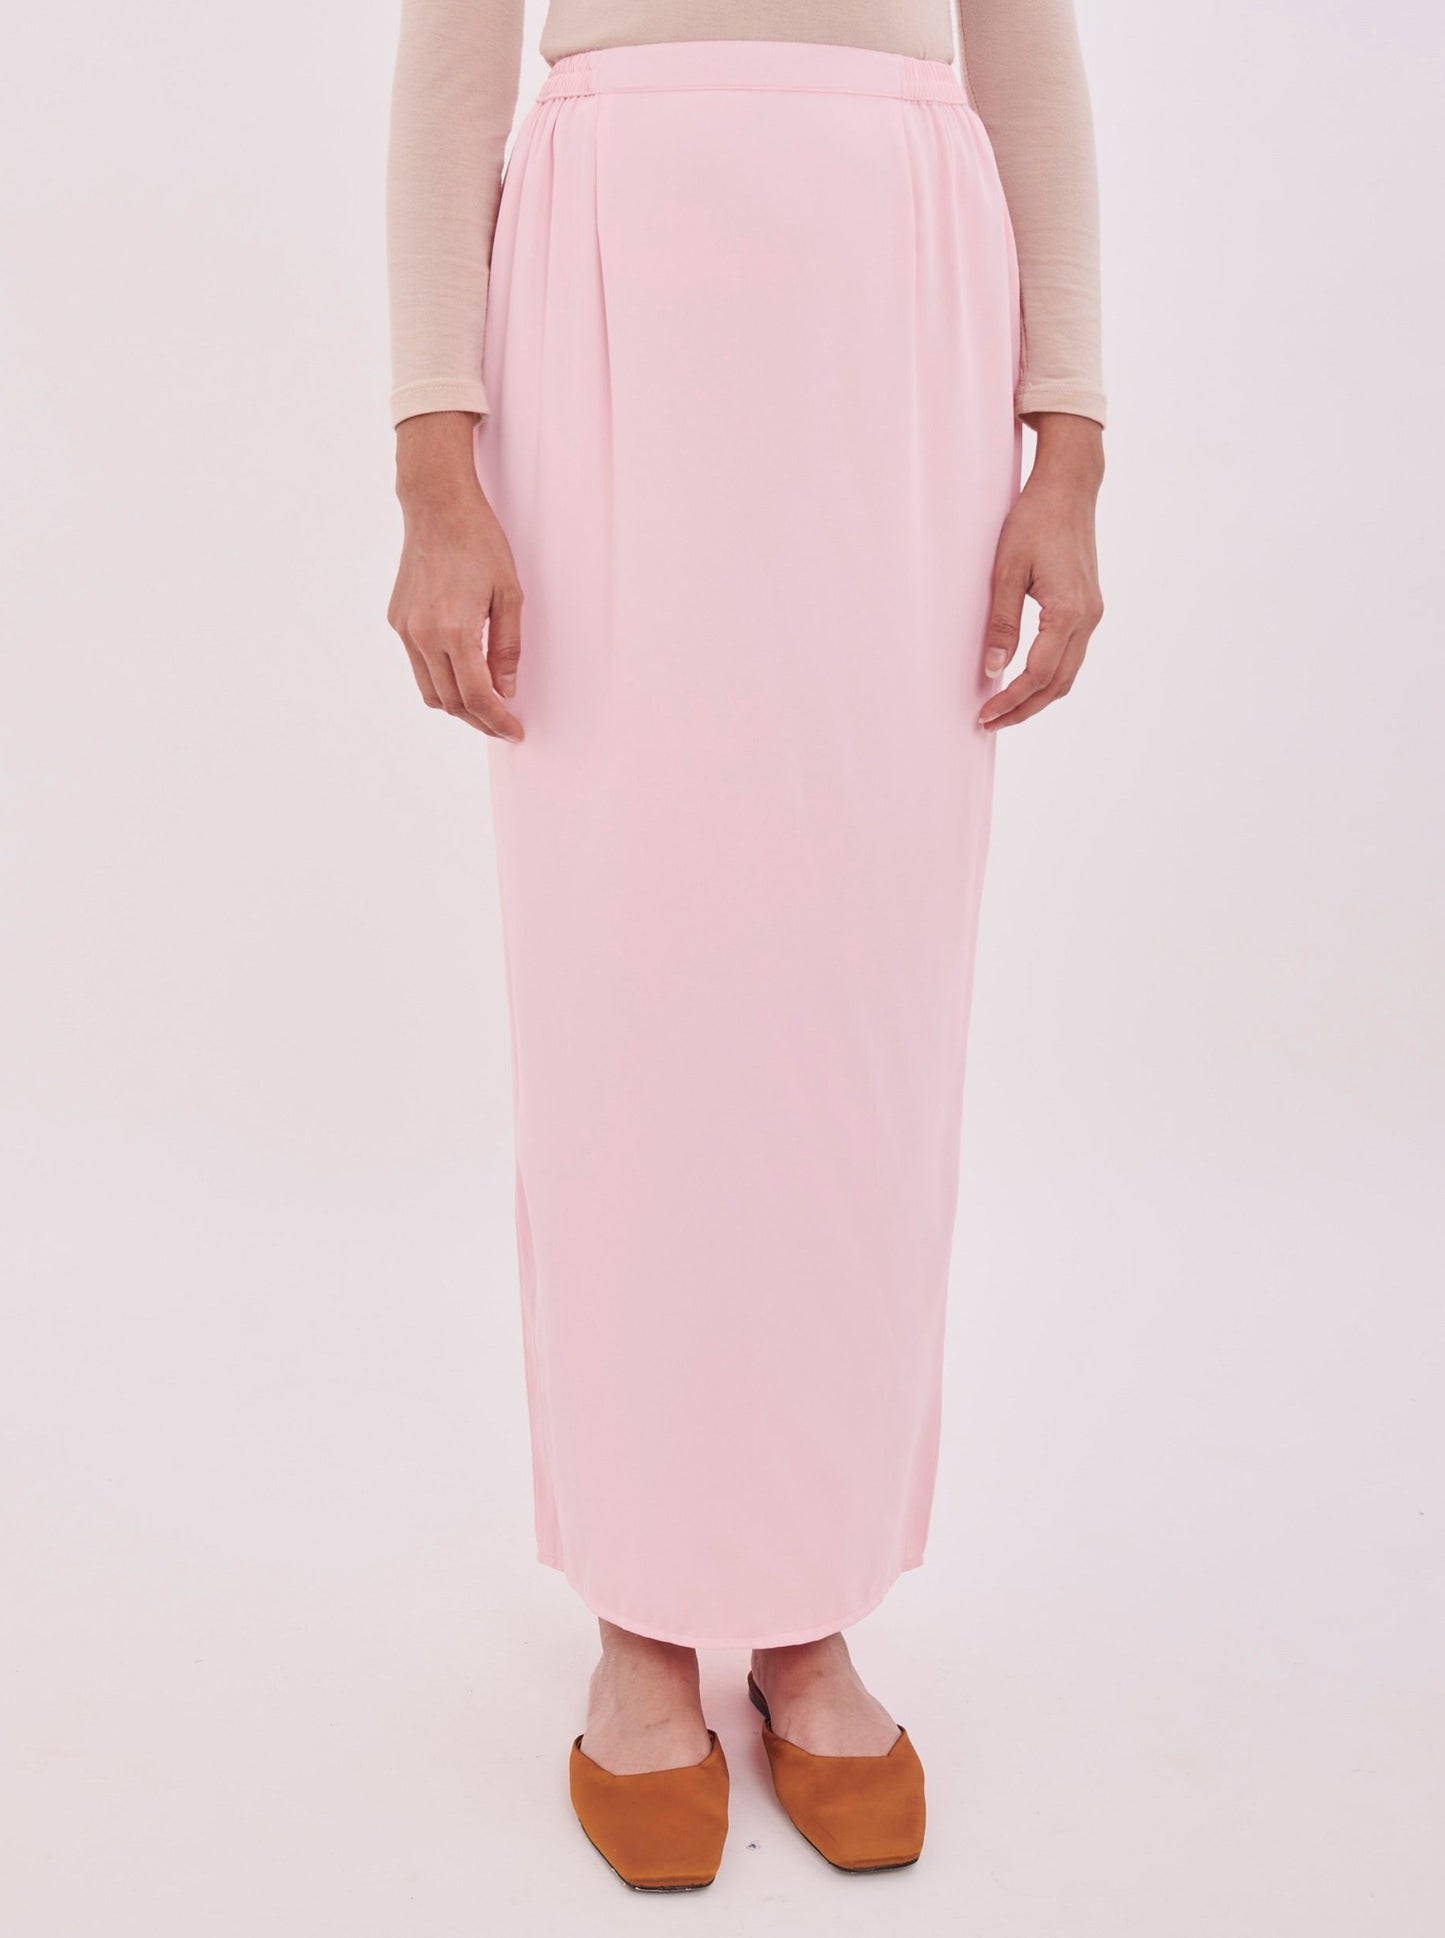 Edza Skirt in Pink